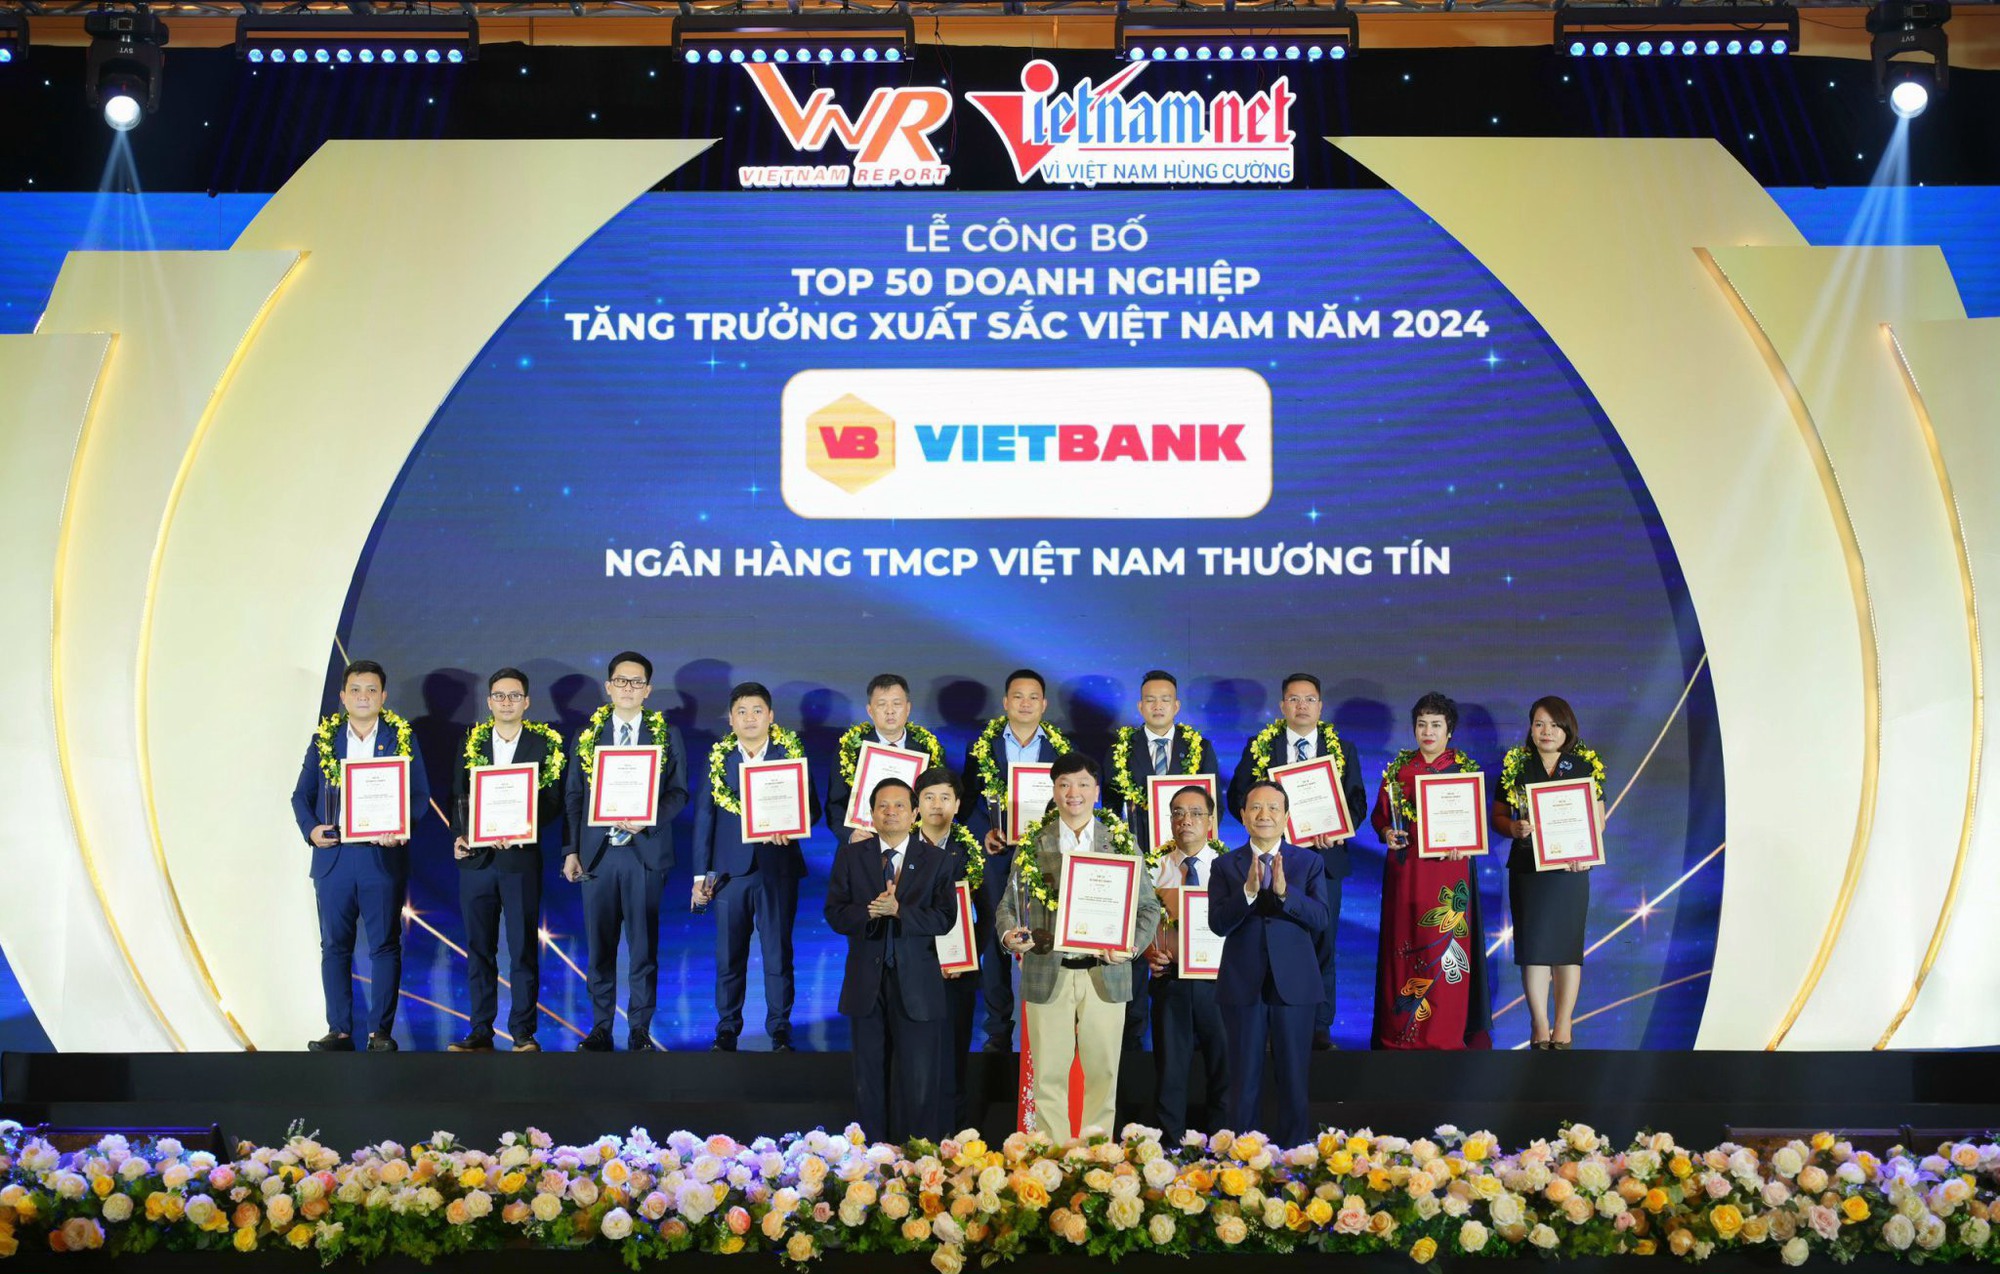 Nguyen Tien Sy, representante de Vietbank, recibió el premio a las 50 empresas de excelente crecimiento en Vietnam en 2024